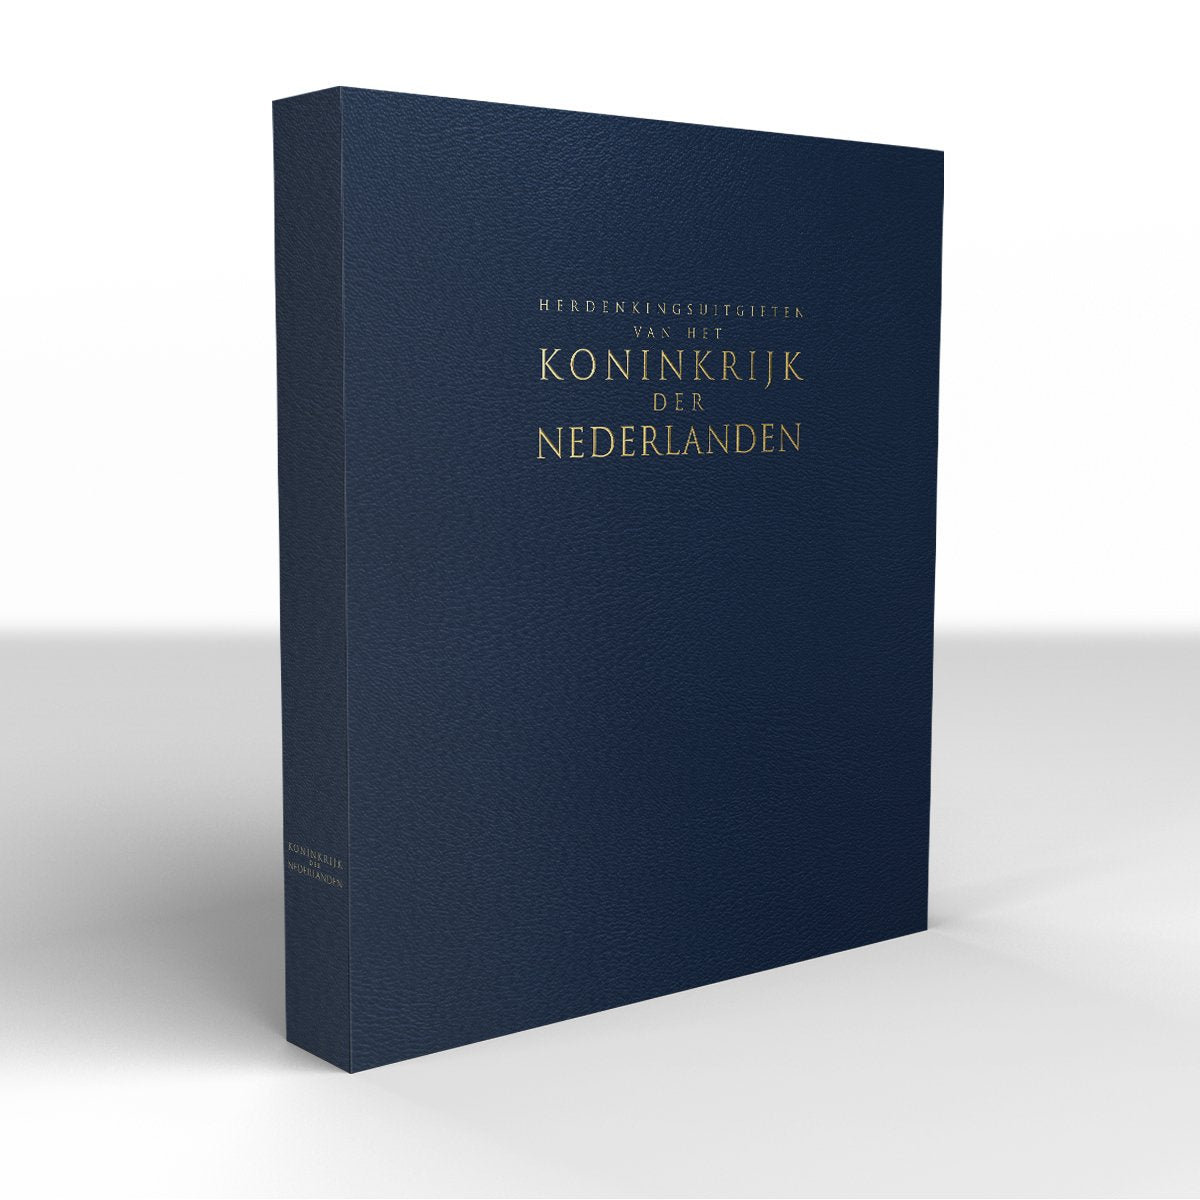 Bewaaralbum "Herdenkingsuitgiften van het Koninkrijk der Nederlanden" - Edel Collecties